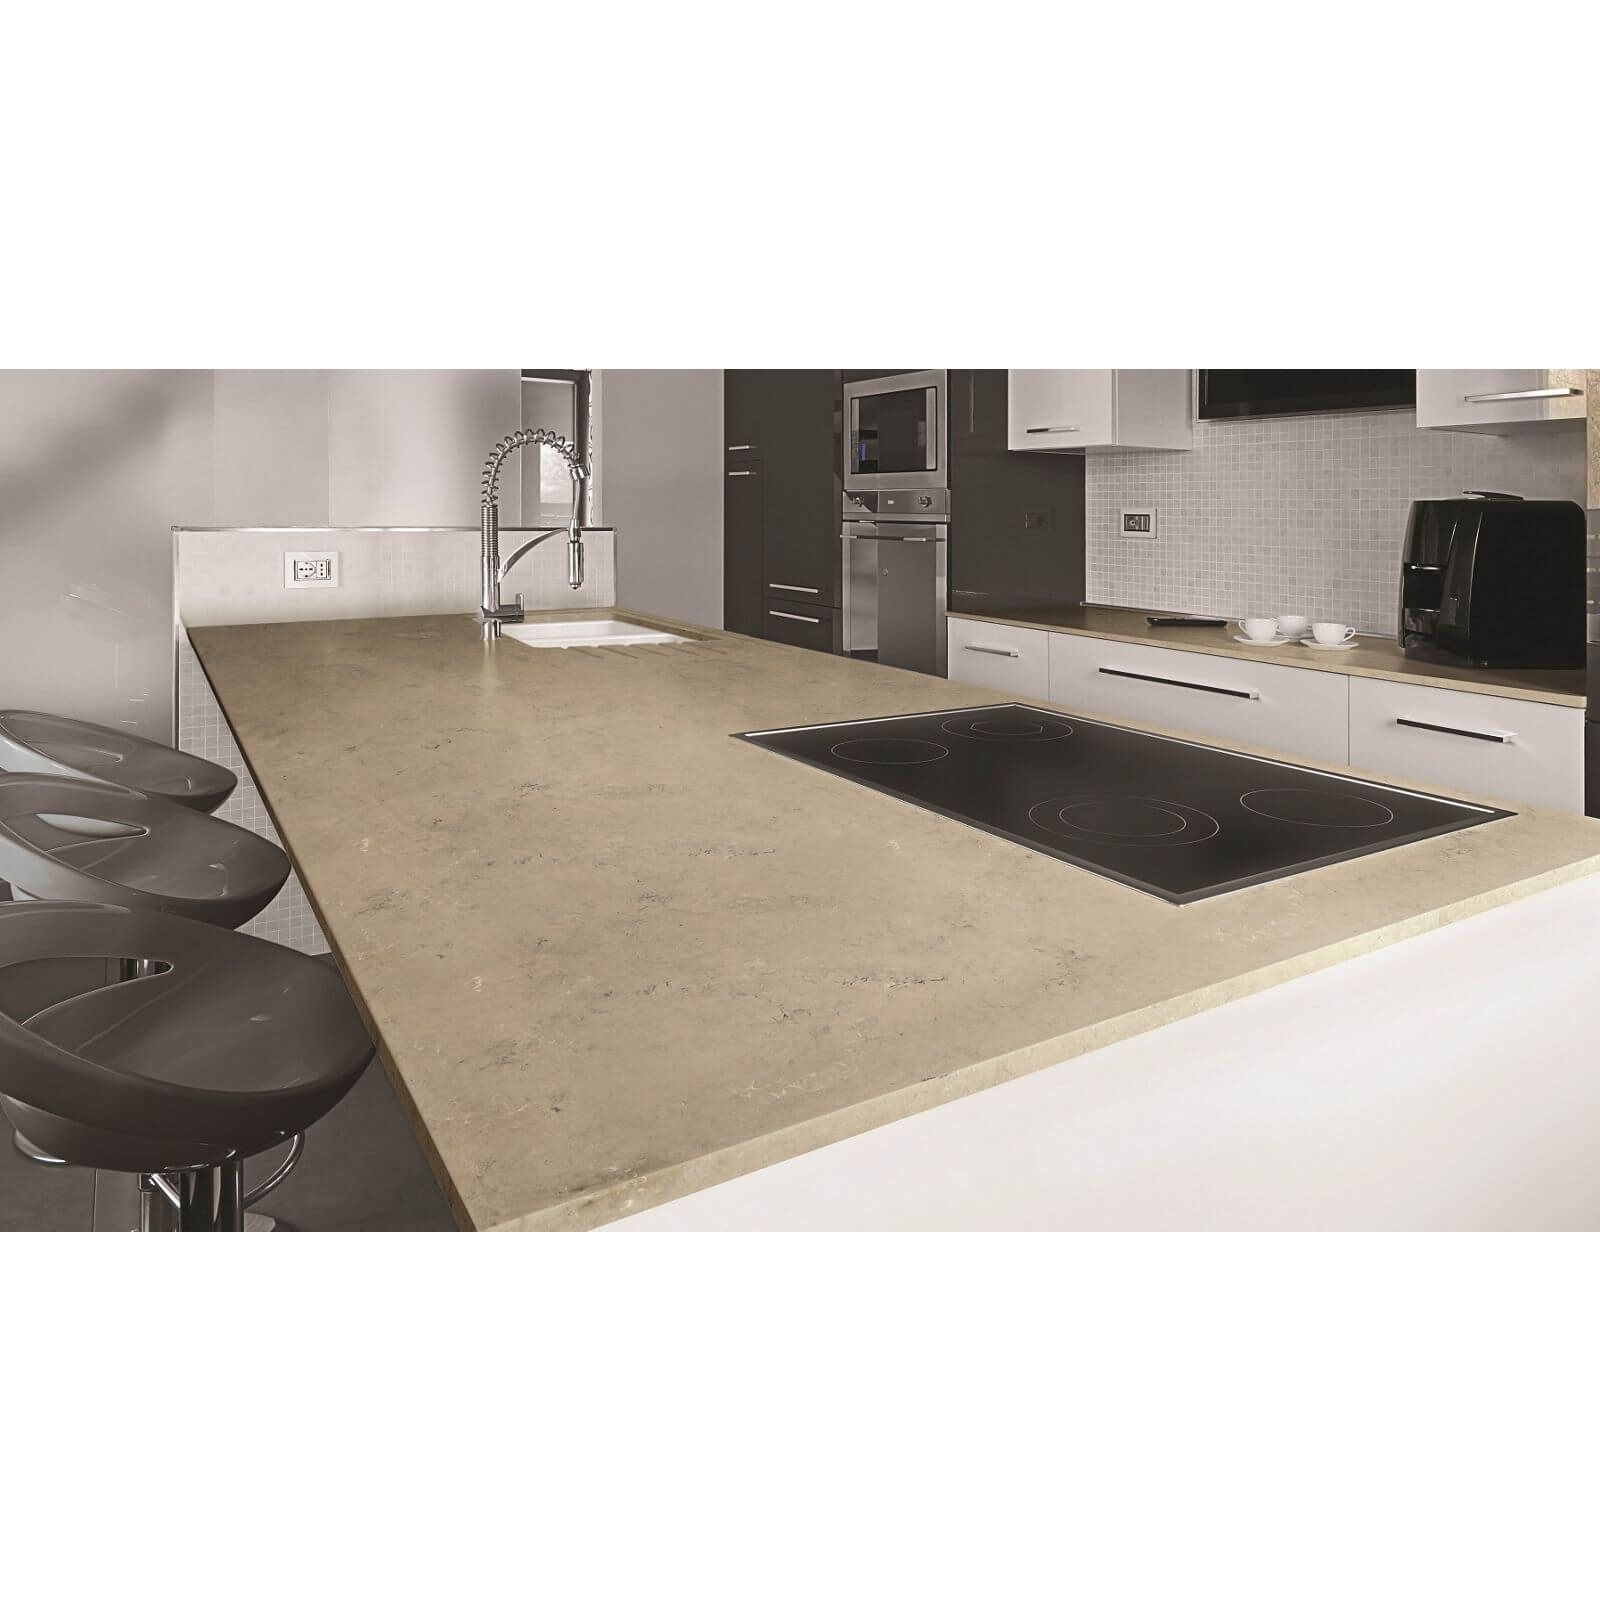 Minerva Desert Rock Kitchen Worktop - 150 x 60 x 2.5cm